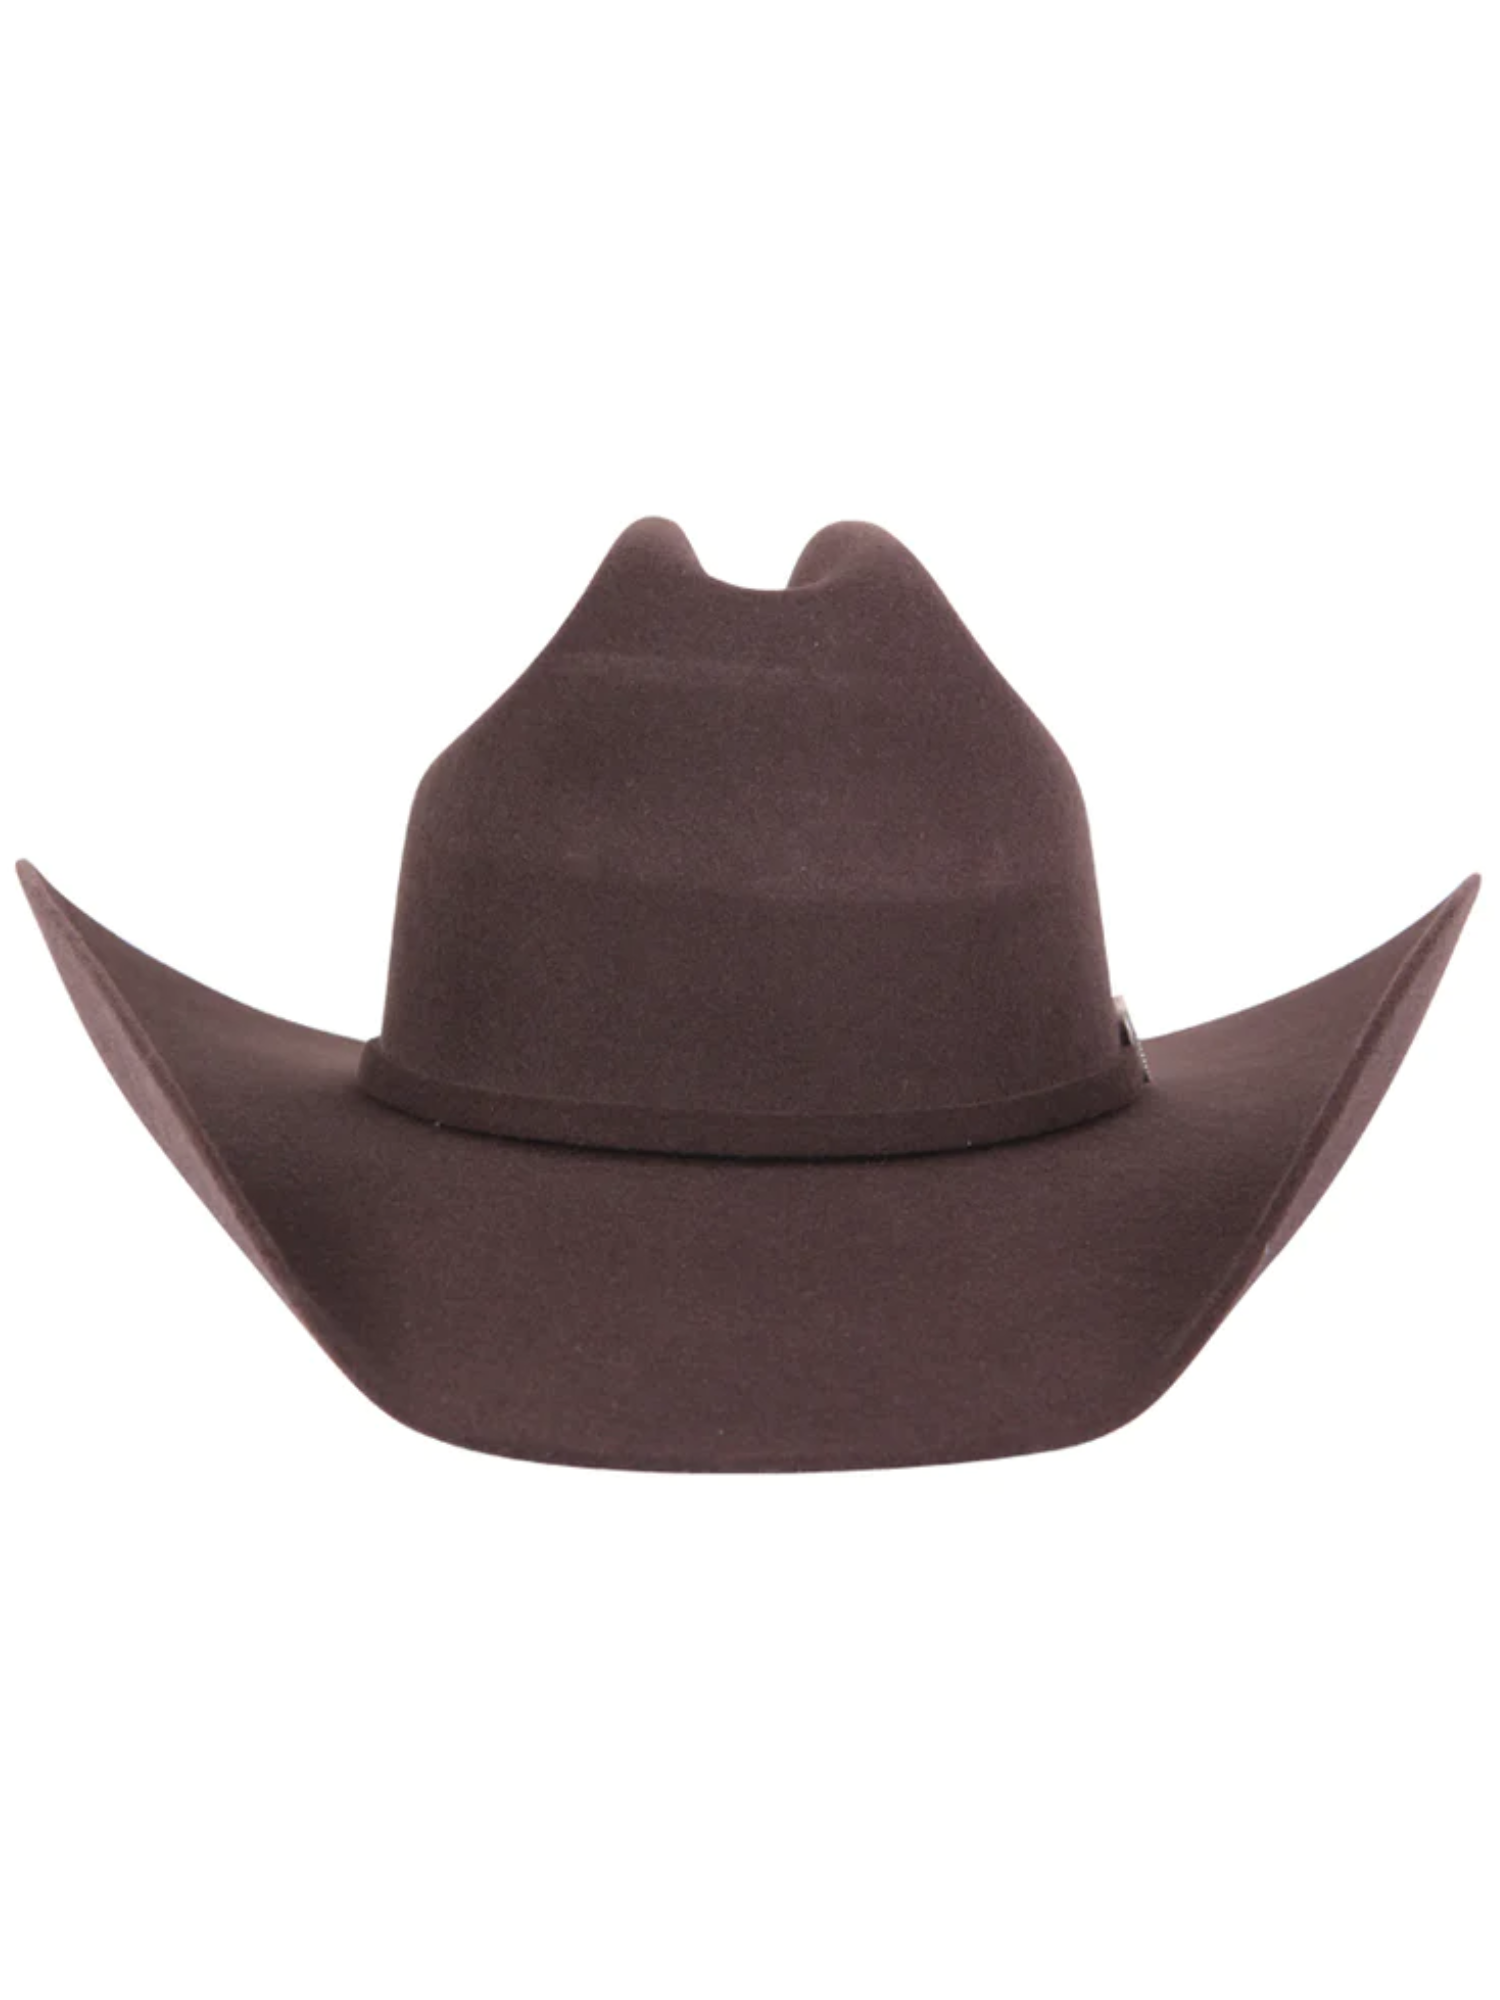 Texana Horma Marlboro 50X Lana para Hombre 'El Señor de los Cielos' - ID: 41668 Cowboy Hat El Señor de los Cielos 